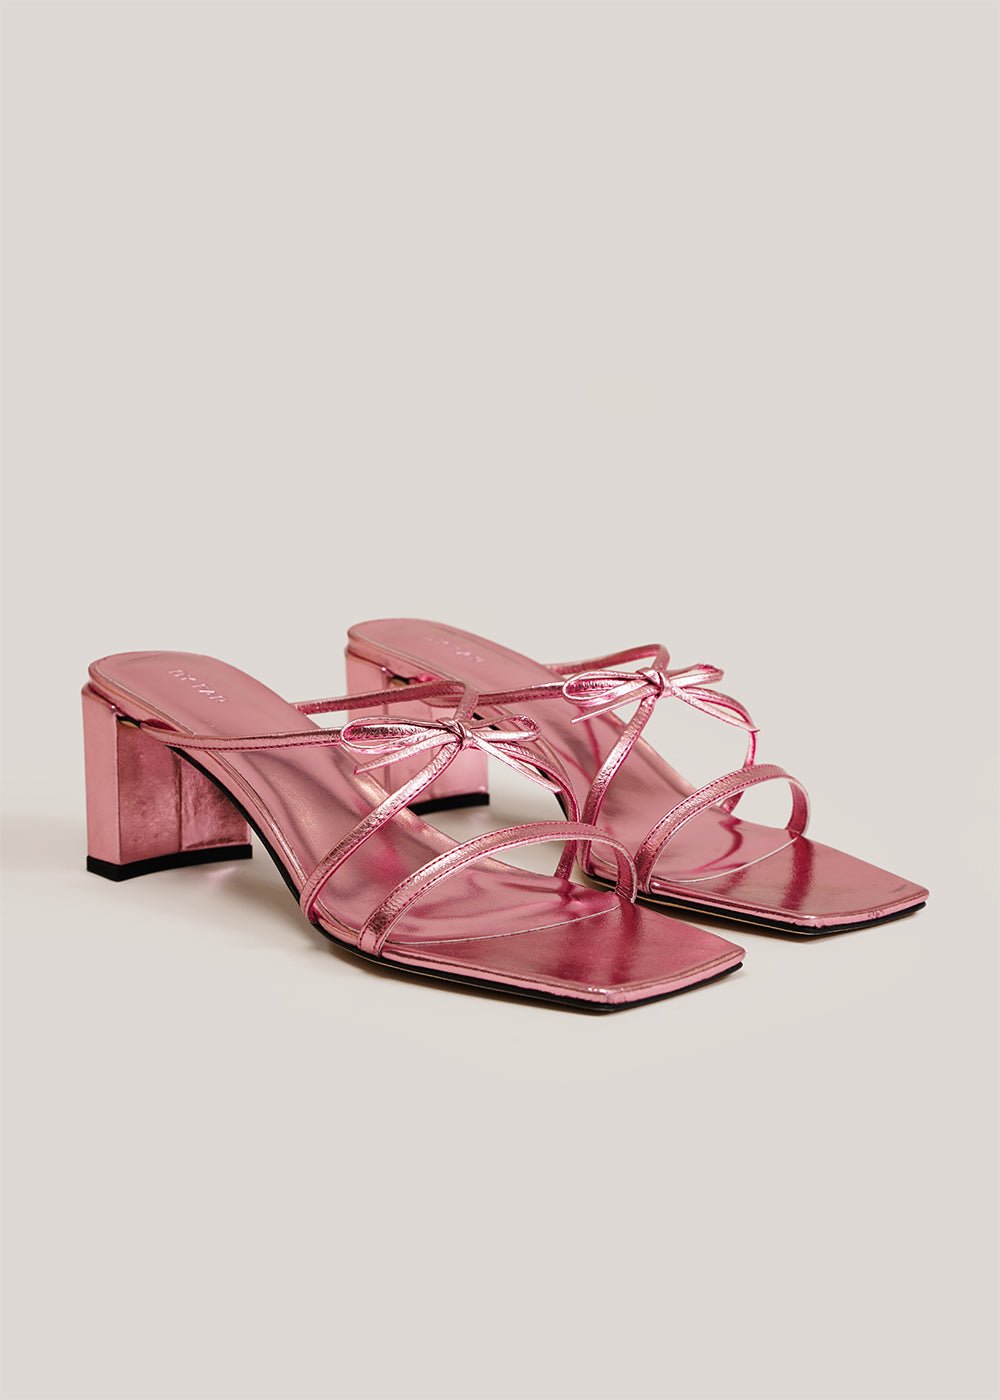 Metallic Pink June Sandals